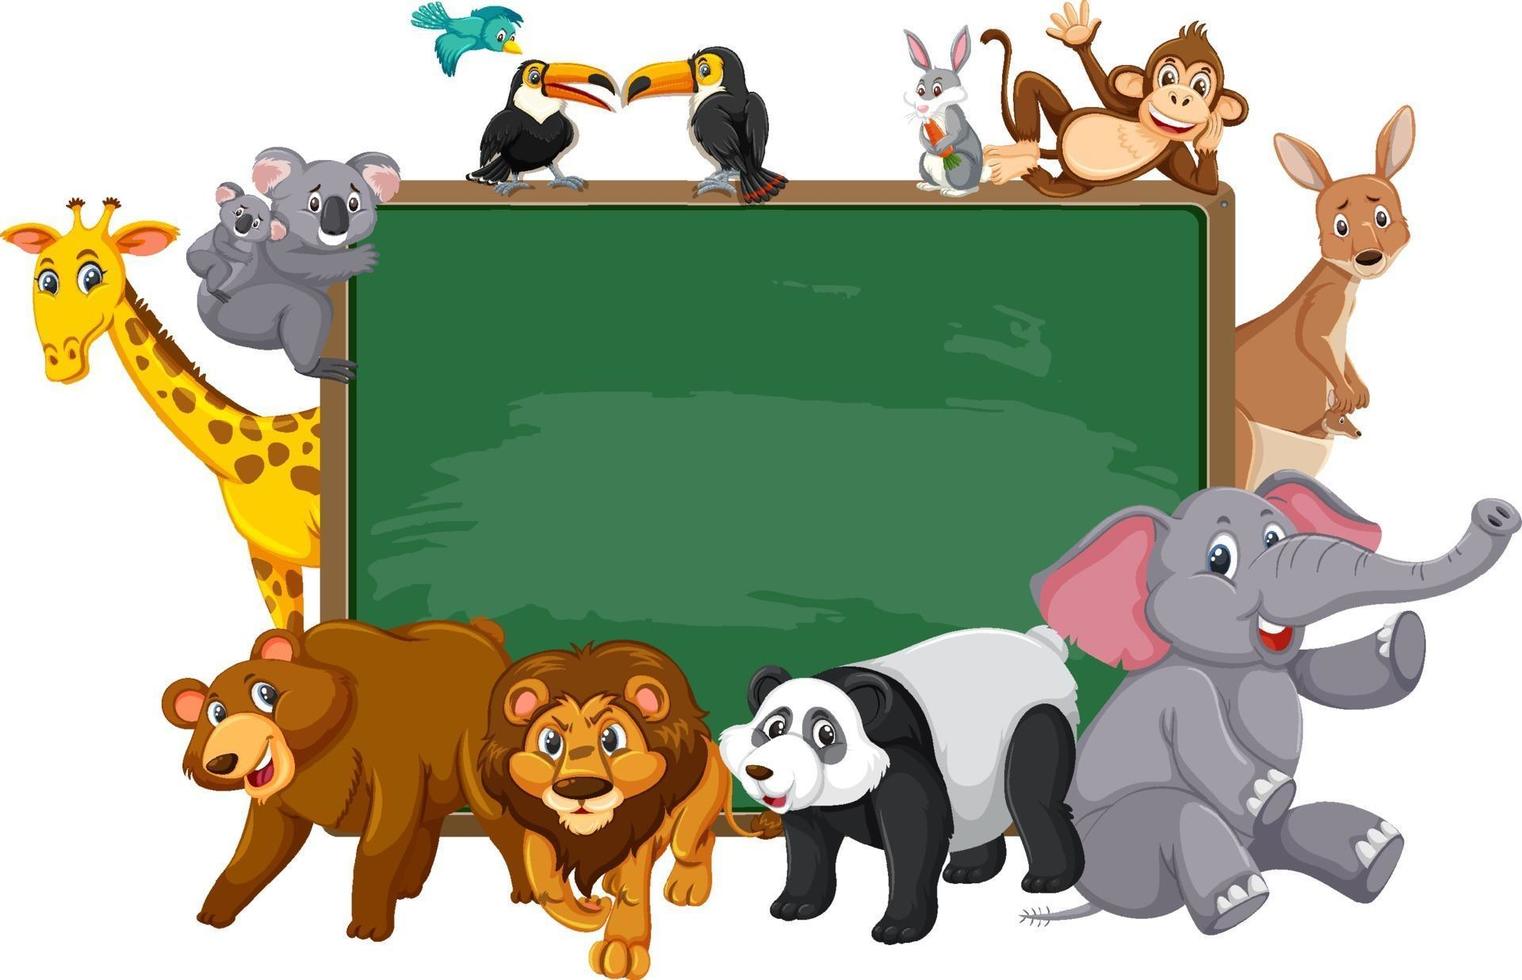 leeg schoolbord met verschillende wilde dieren vector